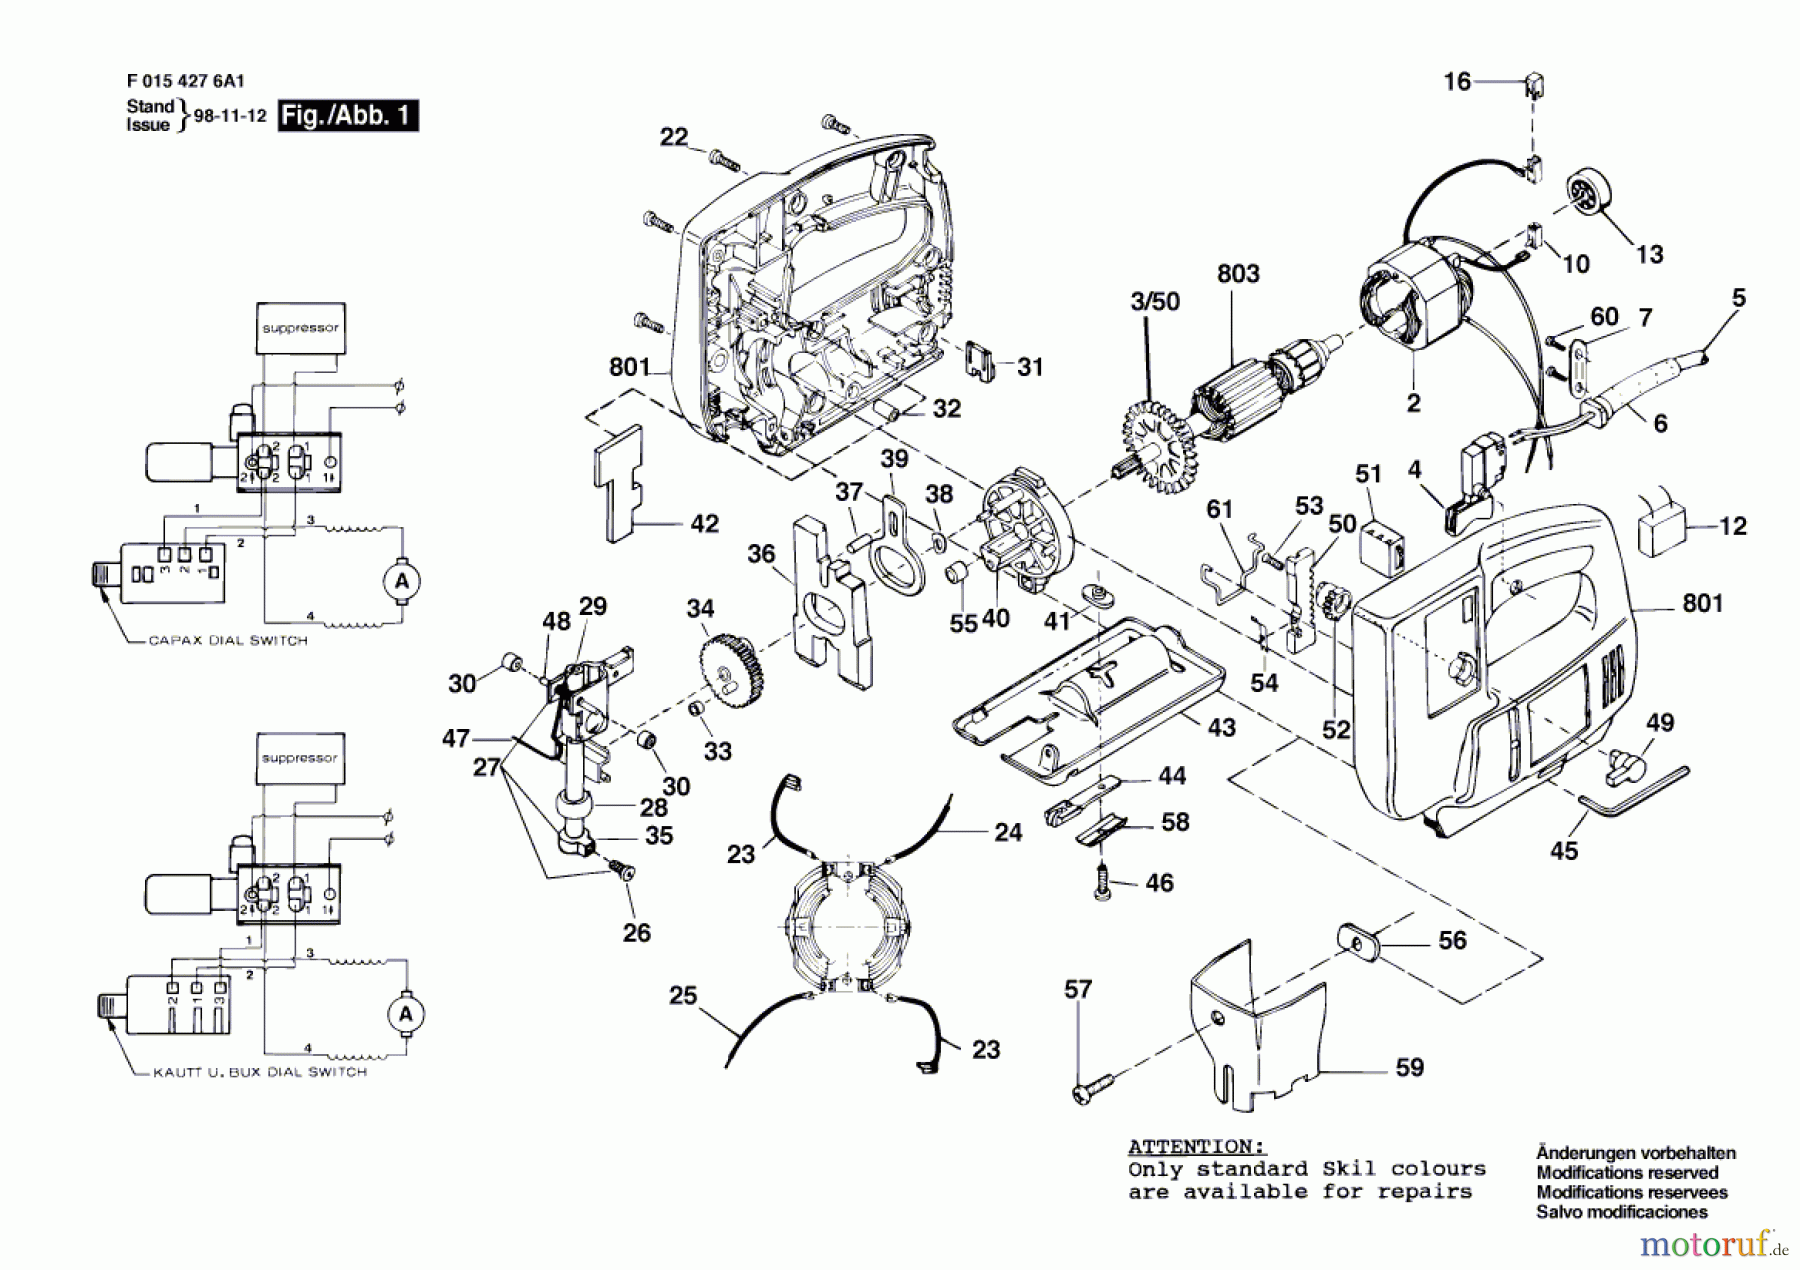  Bosch Werkzeug Stichsäge 4276 H1 Seite 1